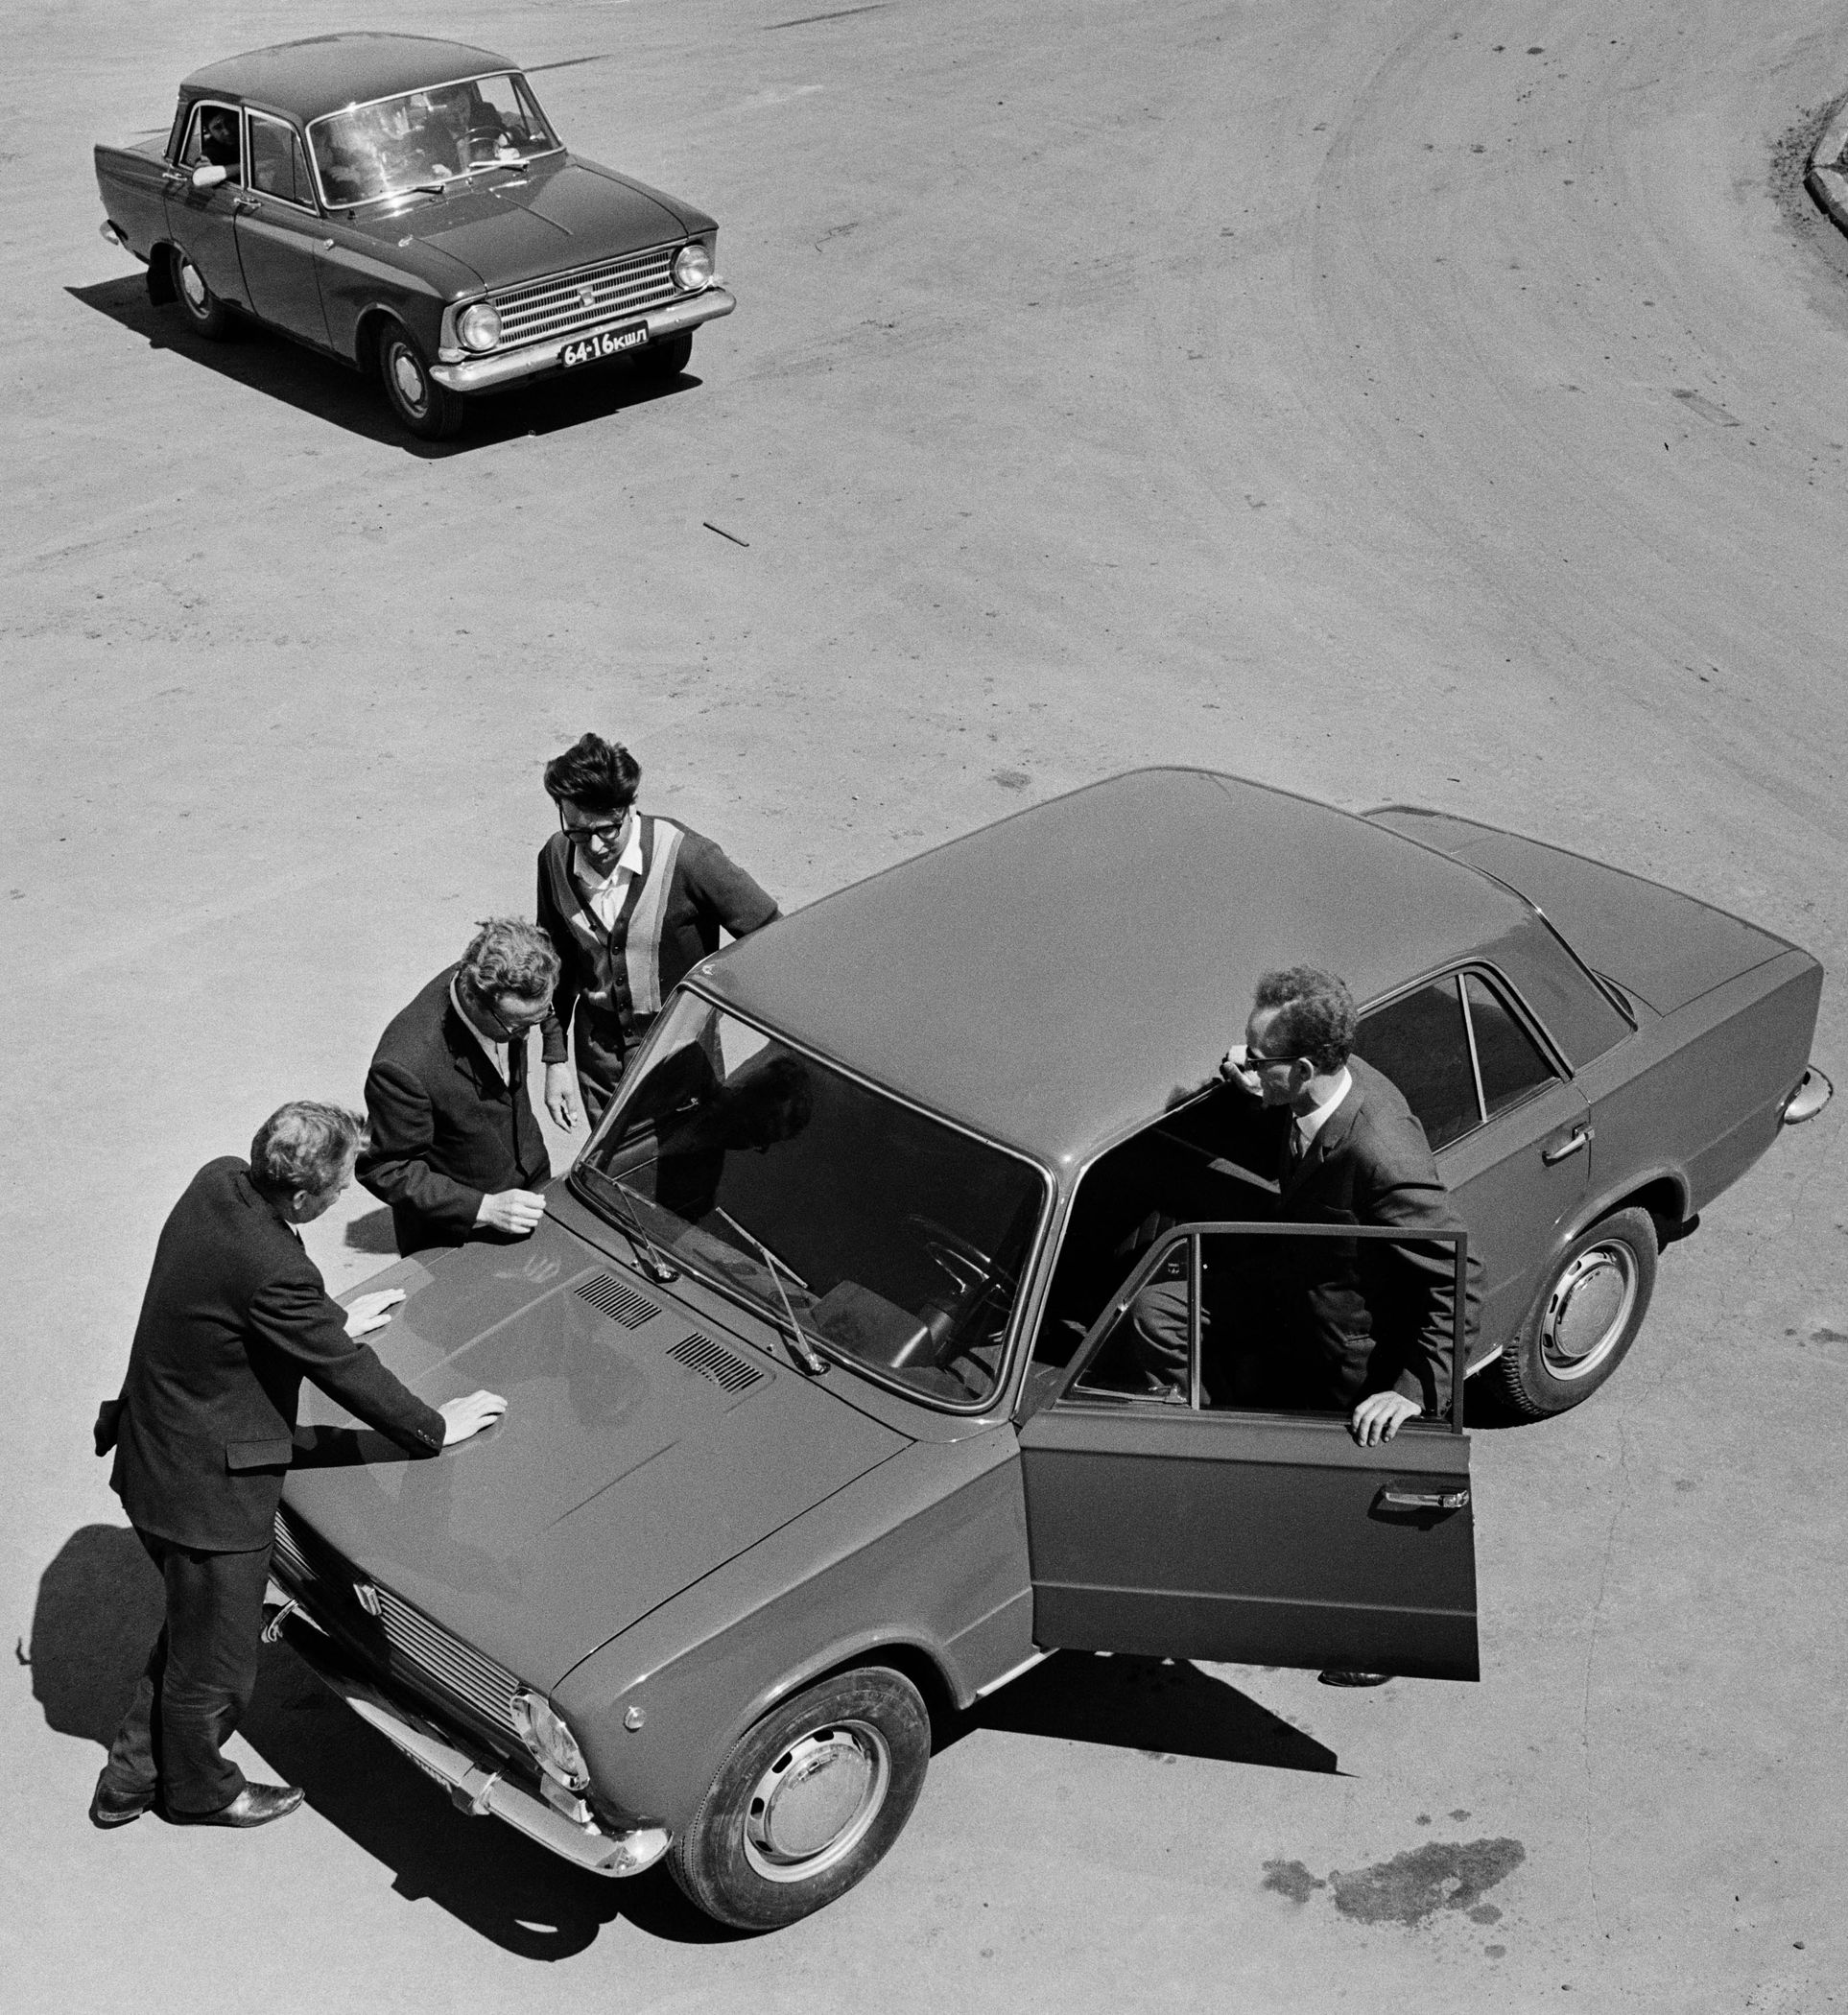 Образец легкового автомобиля «Жигули» ВАЗ-2101, изготовленный итальянской фирмой «Фиат» и принятый для производства на Волжском автомобильном заводе в Тольятти. 1968 г. Фотохроника ТАСС